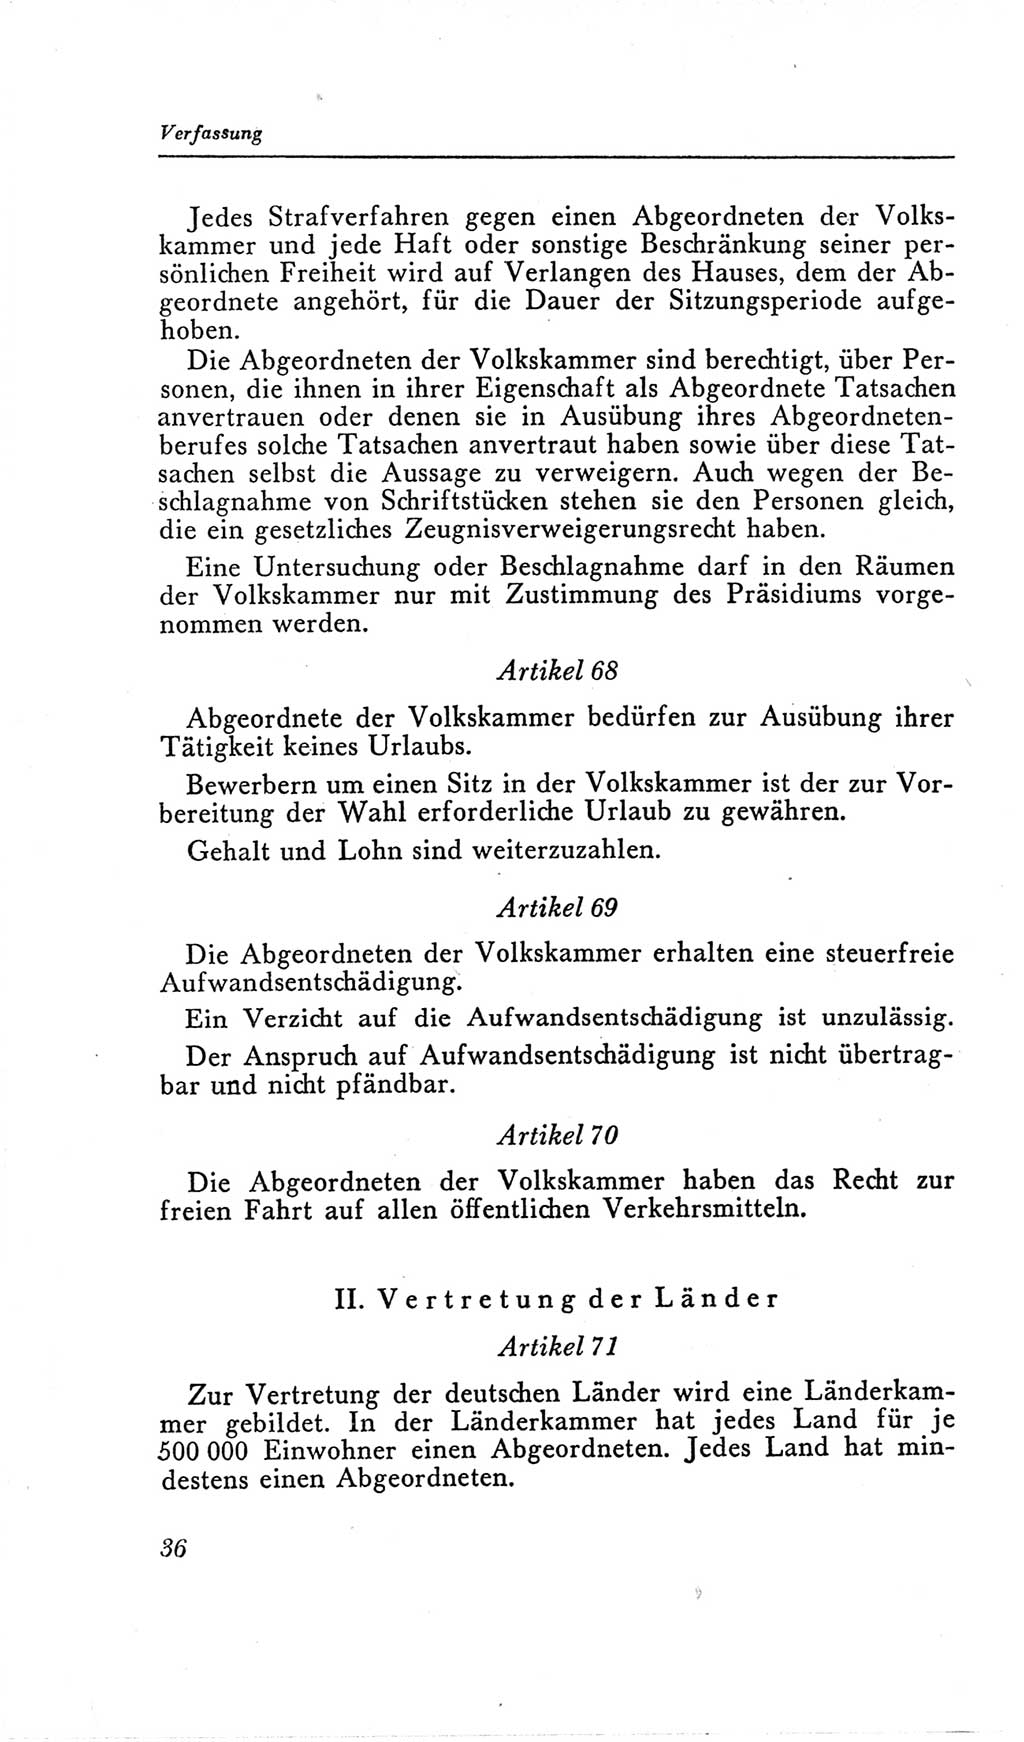 Handbuch der Volkskammer (VK) der Deutschen Demokratischen Republik (DDR), 2. Wahlperiode 1954-1958, Seite 36 (Hdb. VK. DDR, 2. WP. 1954-1958, S. 36)